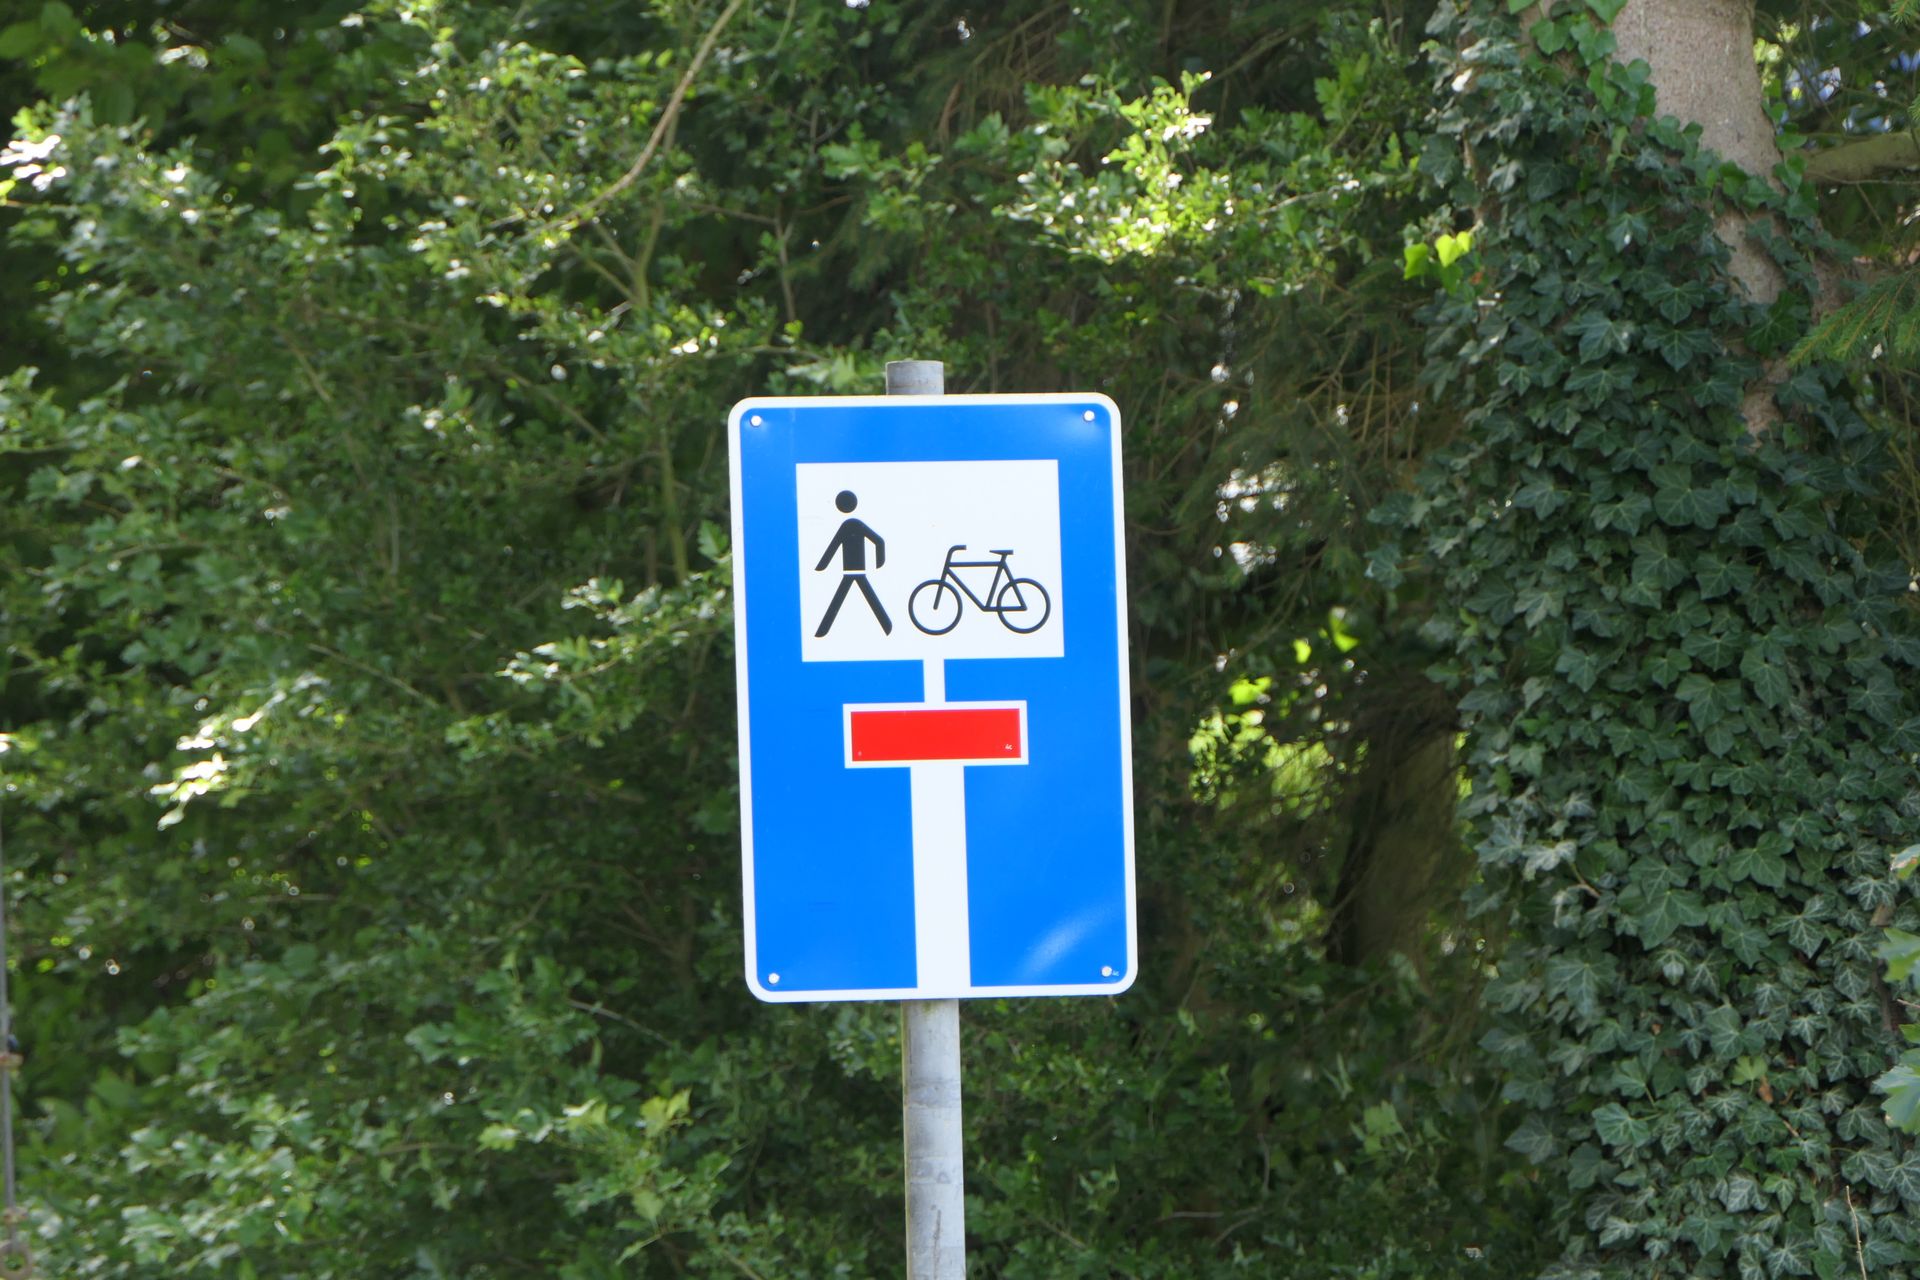 Bardzo fajny wynalazek, który jest już powszechnie stosowany między innymi w Niemczech i Holandii. Czyli znak informujący o drodze bez przejazdu, ale z wyłączeniem rowerzystów i pieszych. Bardzo się przydaje, gdy poruszamy się rowerem w nieznanym terenie - dzięki takiemu znakowi od razu wiemy, że będzie przejazd.